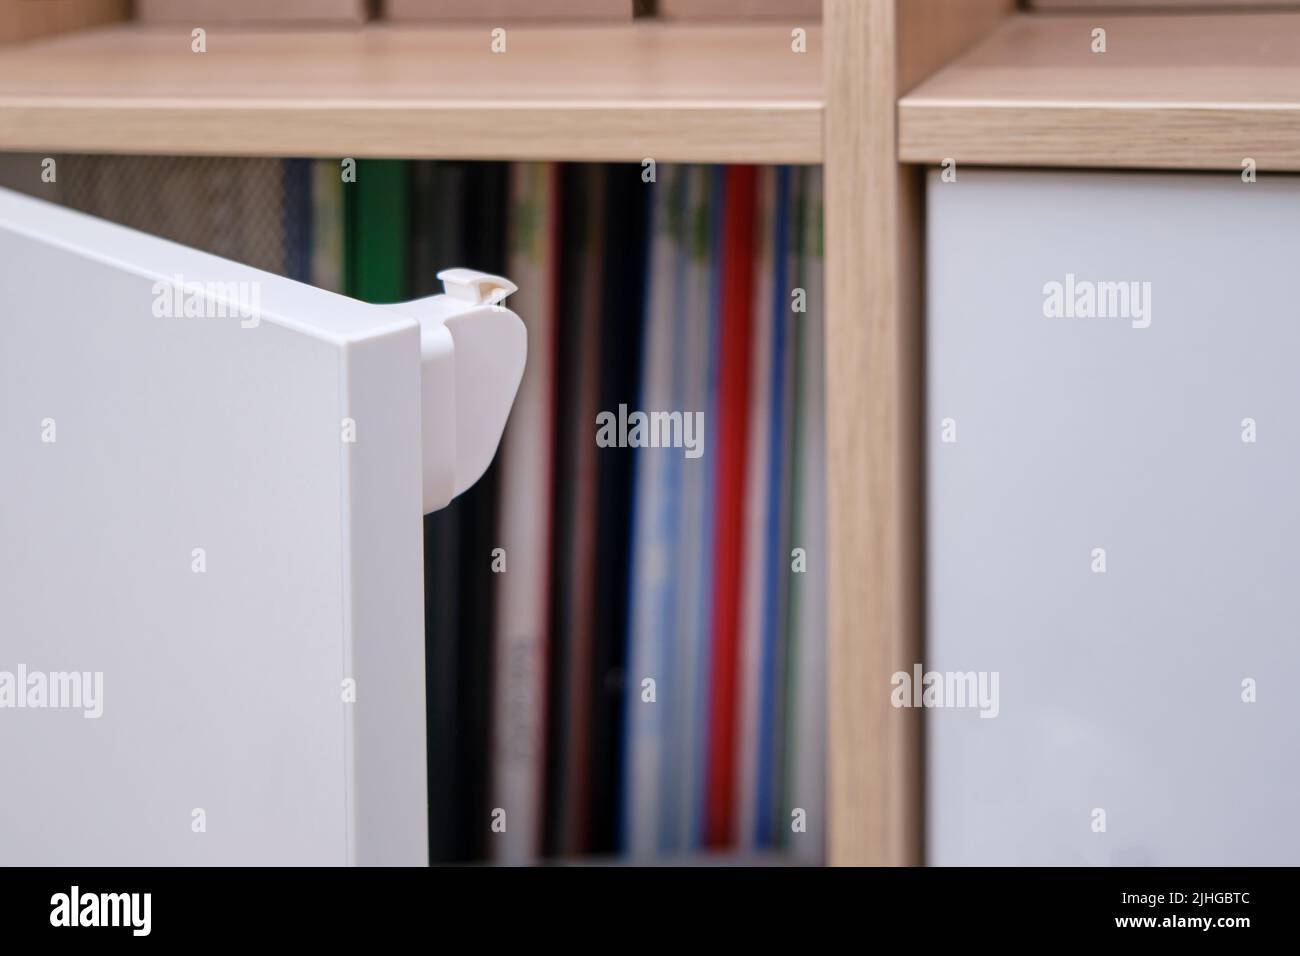 Bloqueo magnético a prueba de niños para bloquear puertas de armarios y  cajones de muebles domésticos Fotografía de stock - Alamy